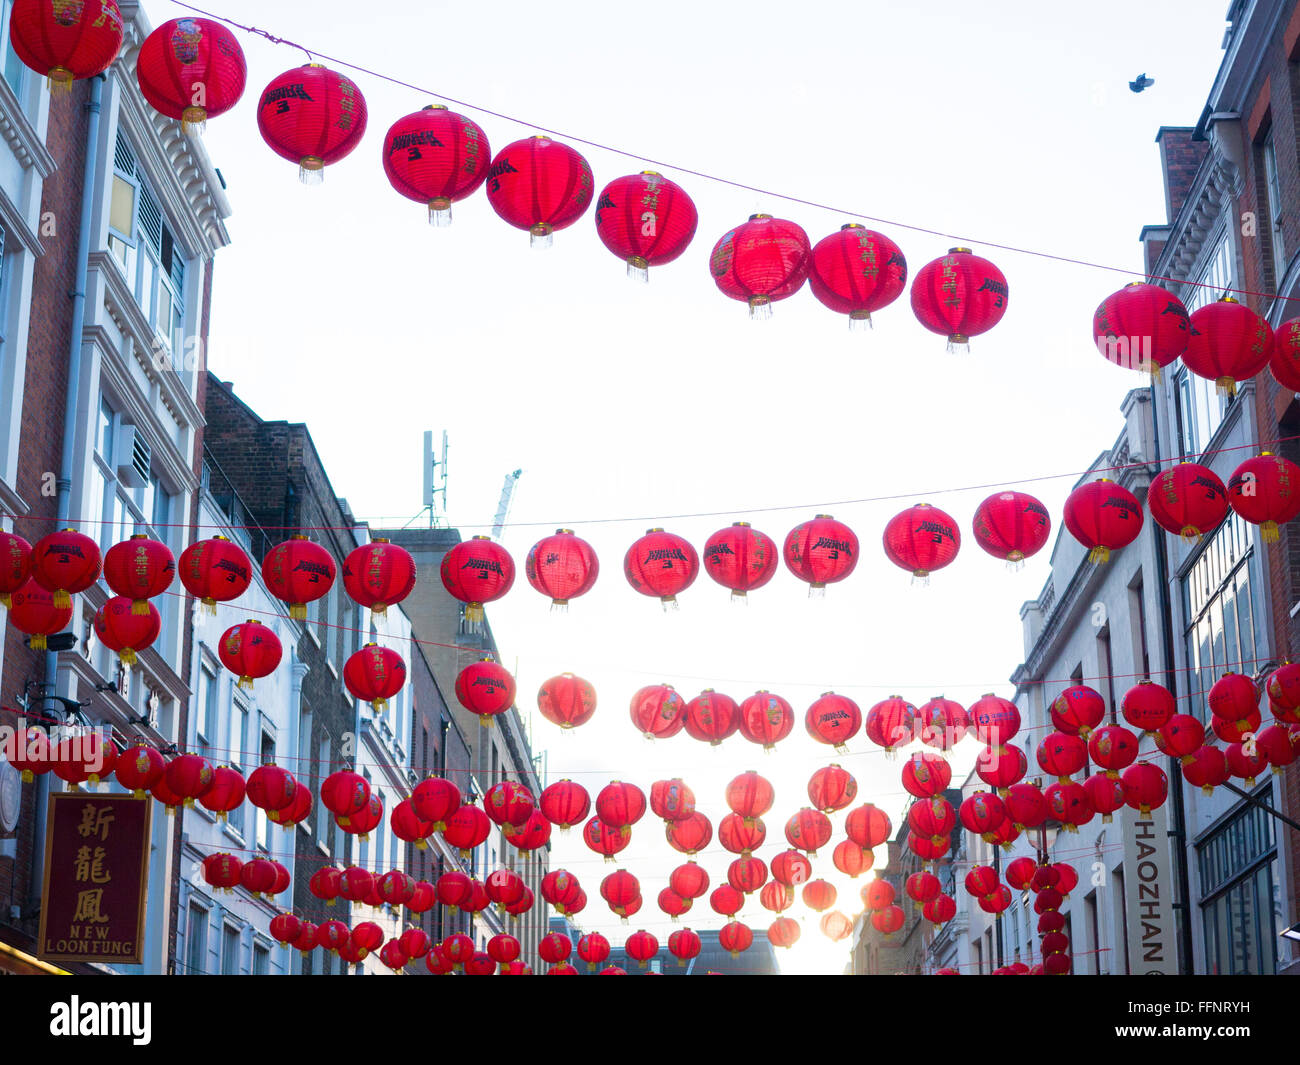 Lanternes de Nouvel An chinois dans le quartier chinois Banque D'Images